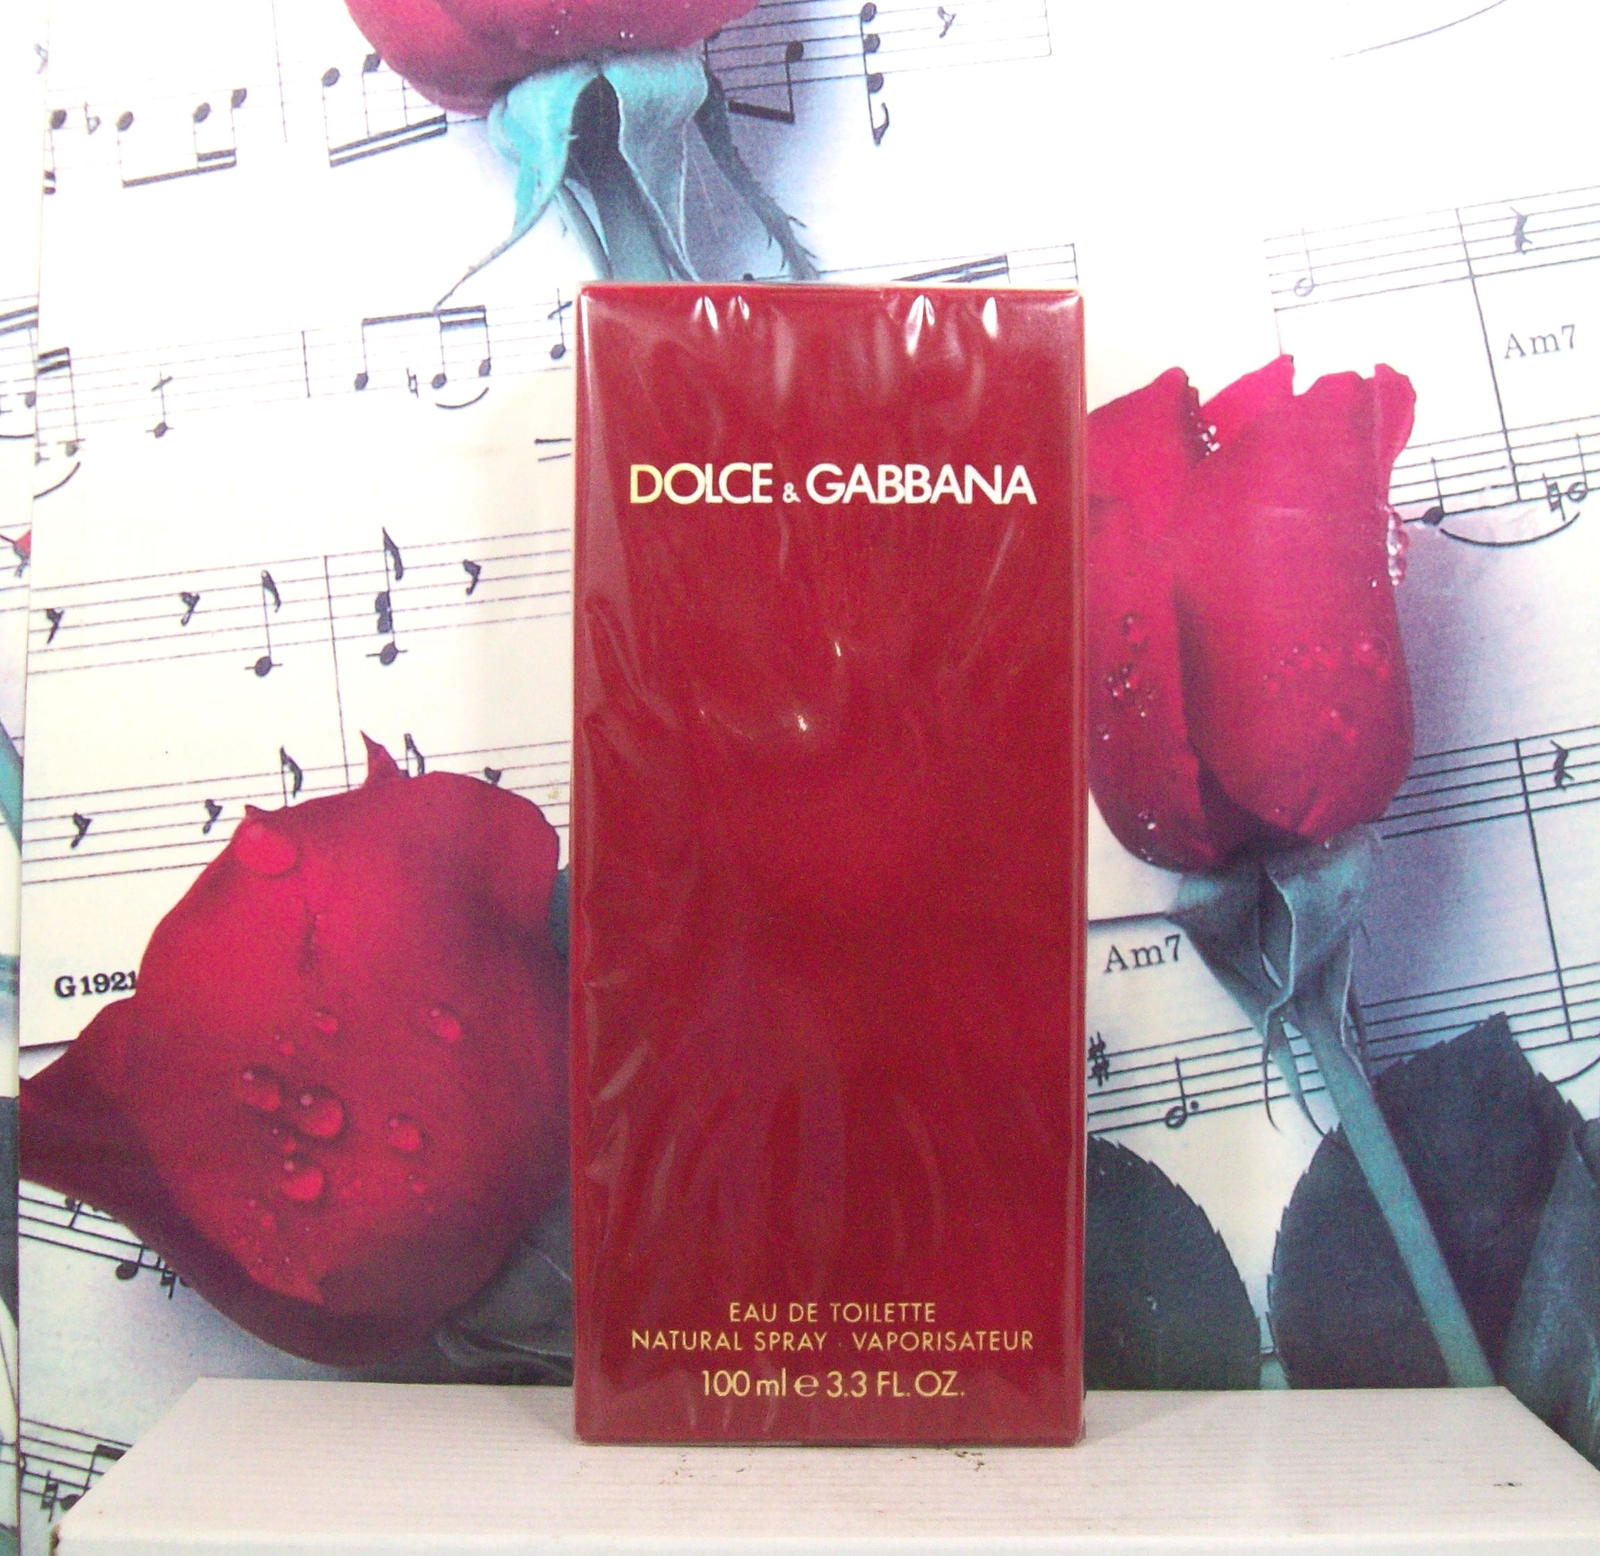 Dolce & Gabbana Classic For Women 3.3 OZ. EDT Spray. Red Velvet Box - $259.99